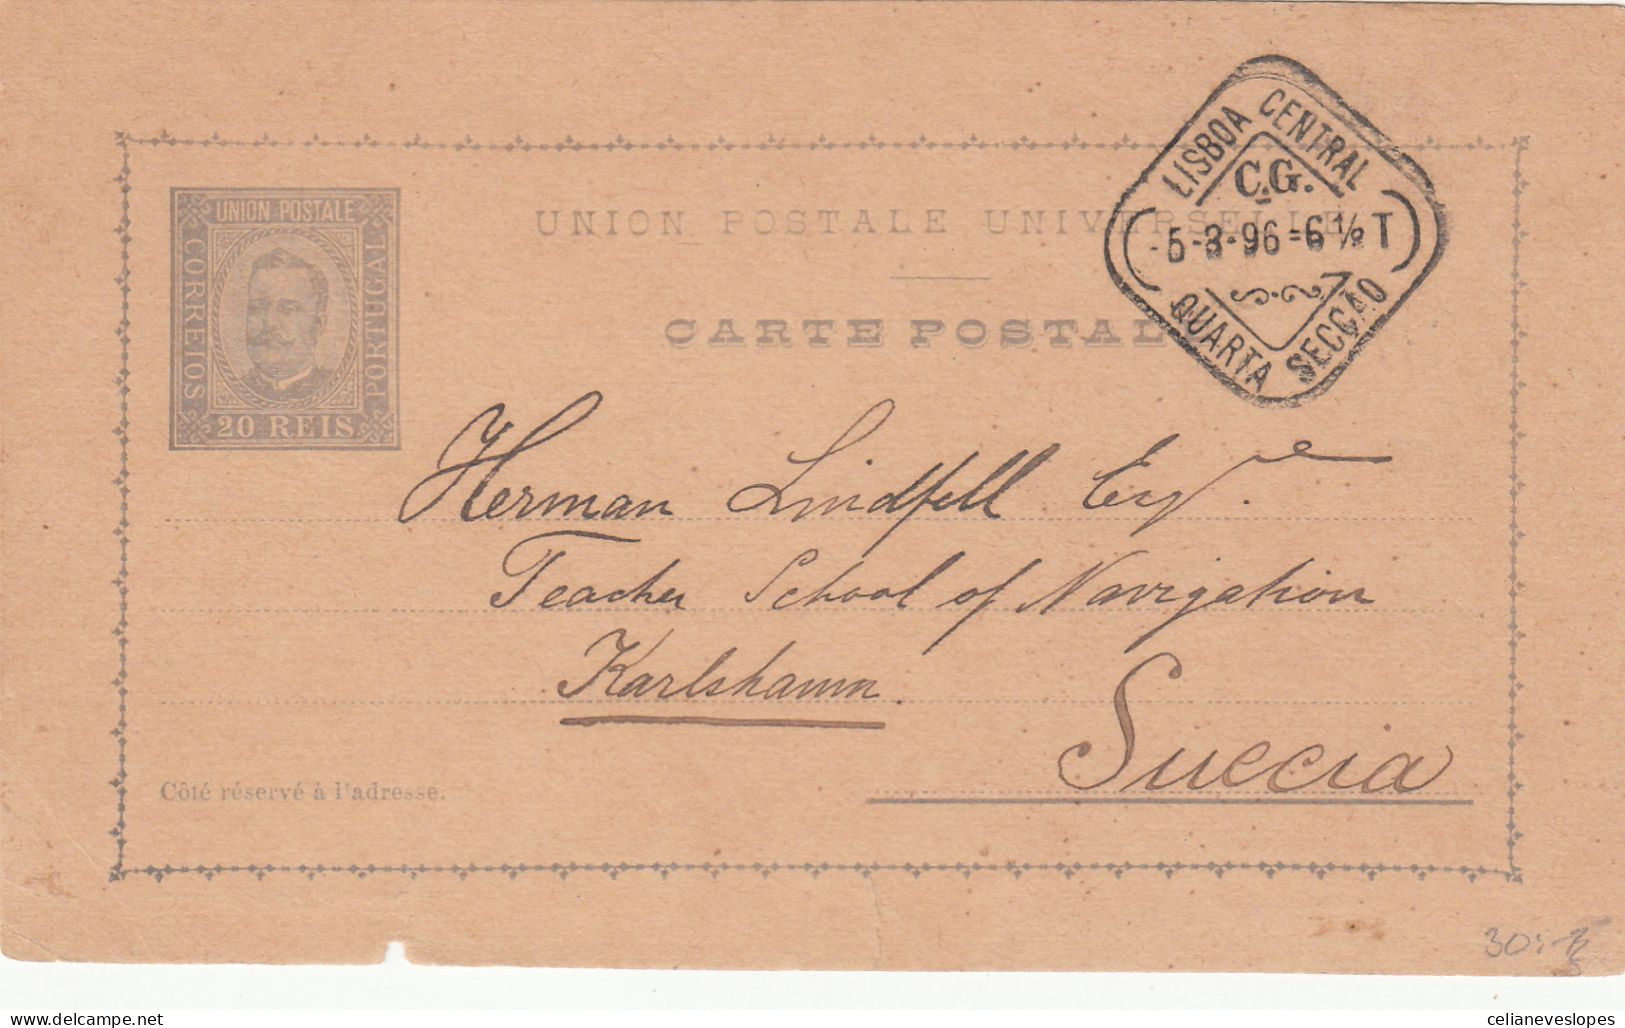 Portugal, Postal Circulado De Lisboa Para A Suécia Em 1896 - Covers & Documents